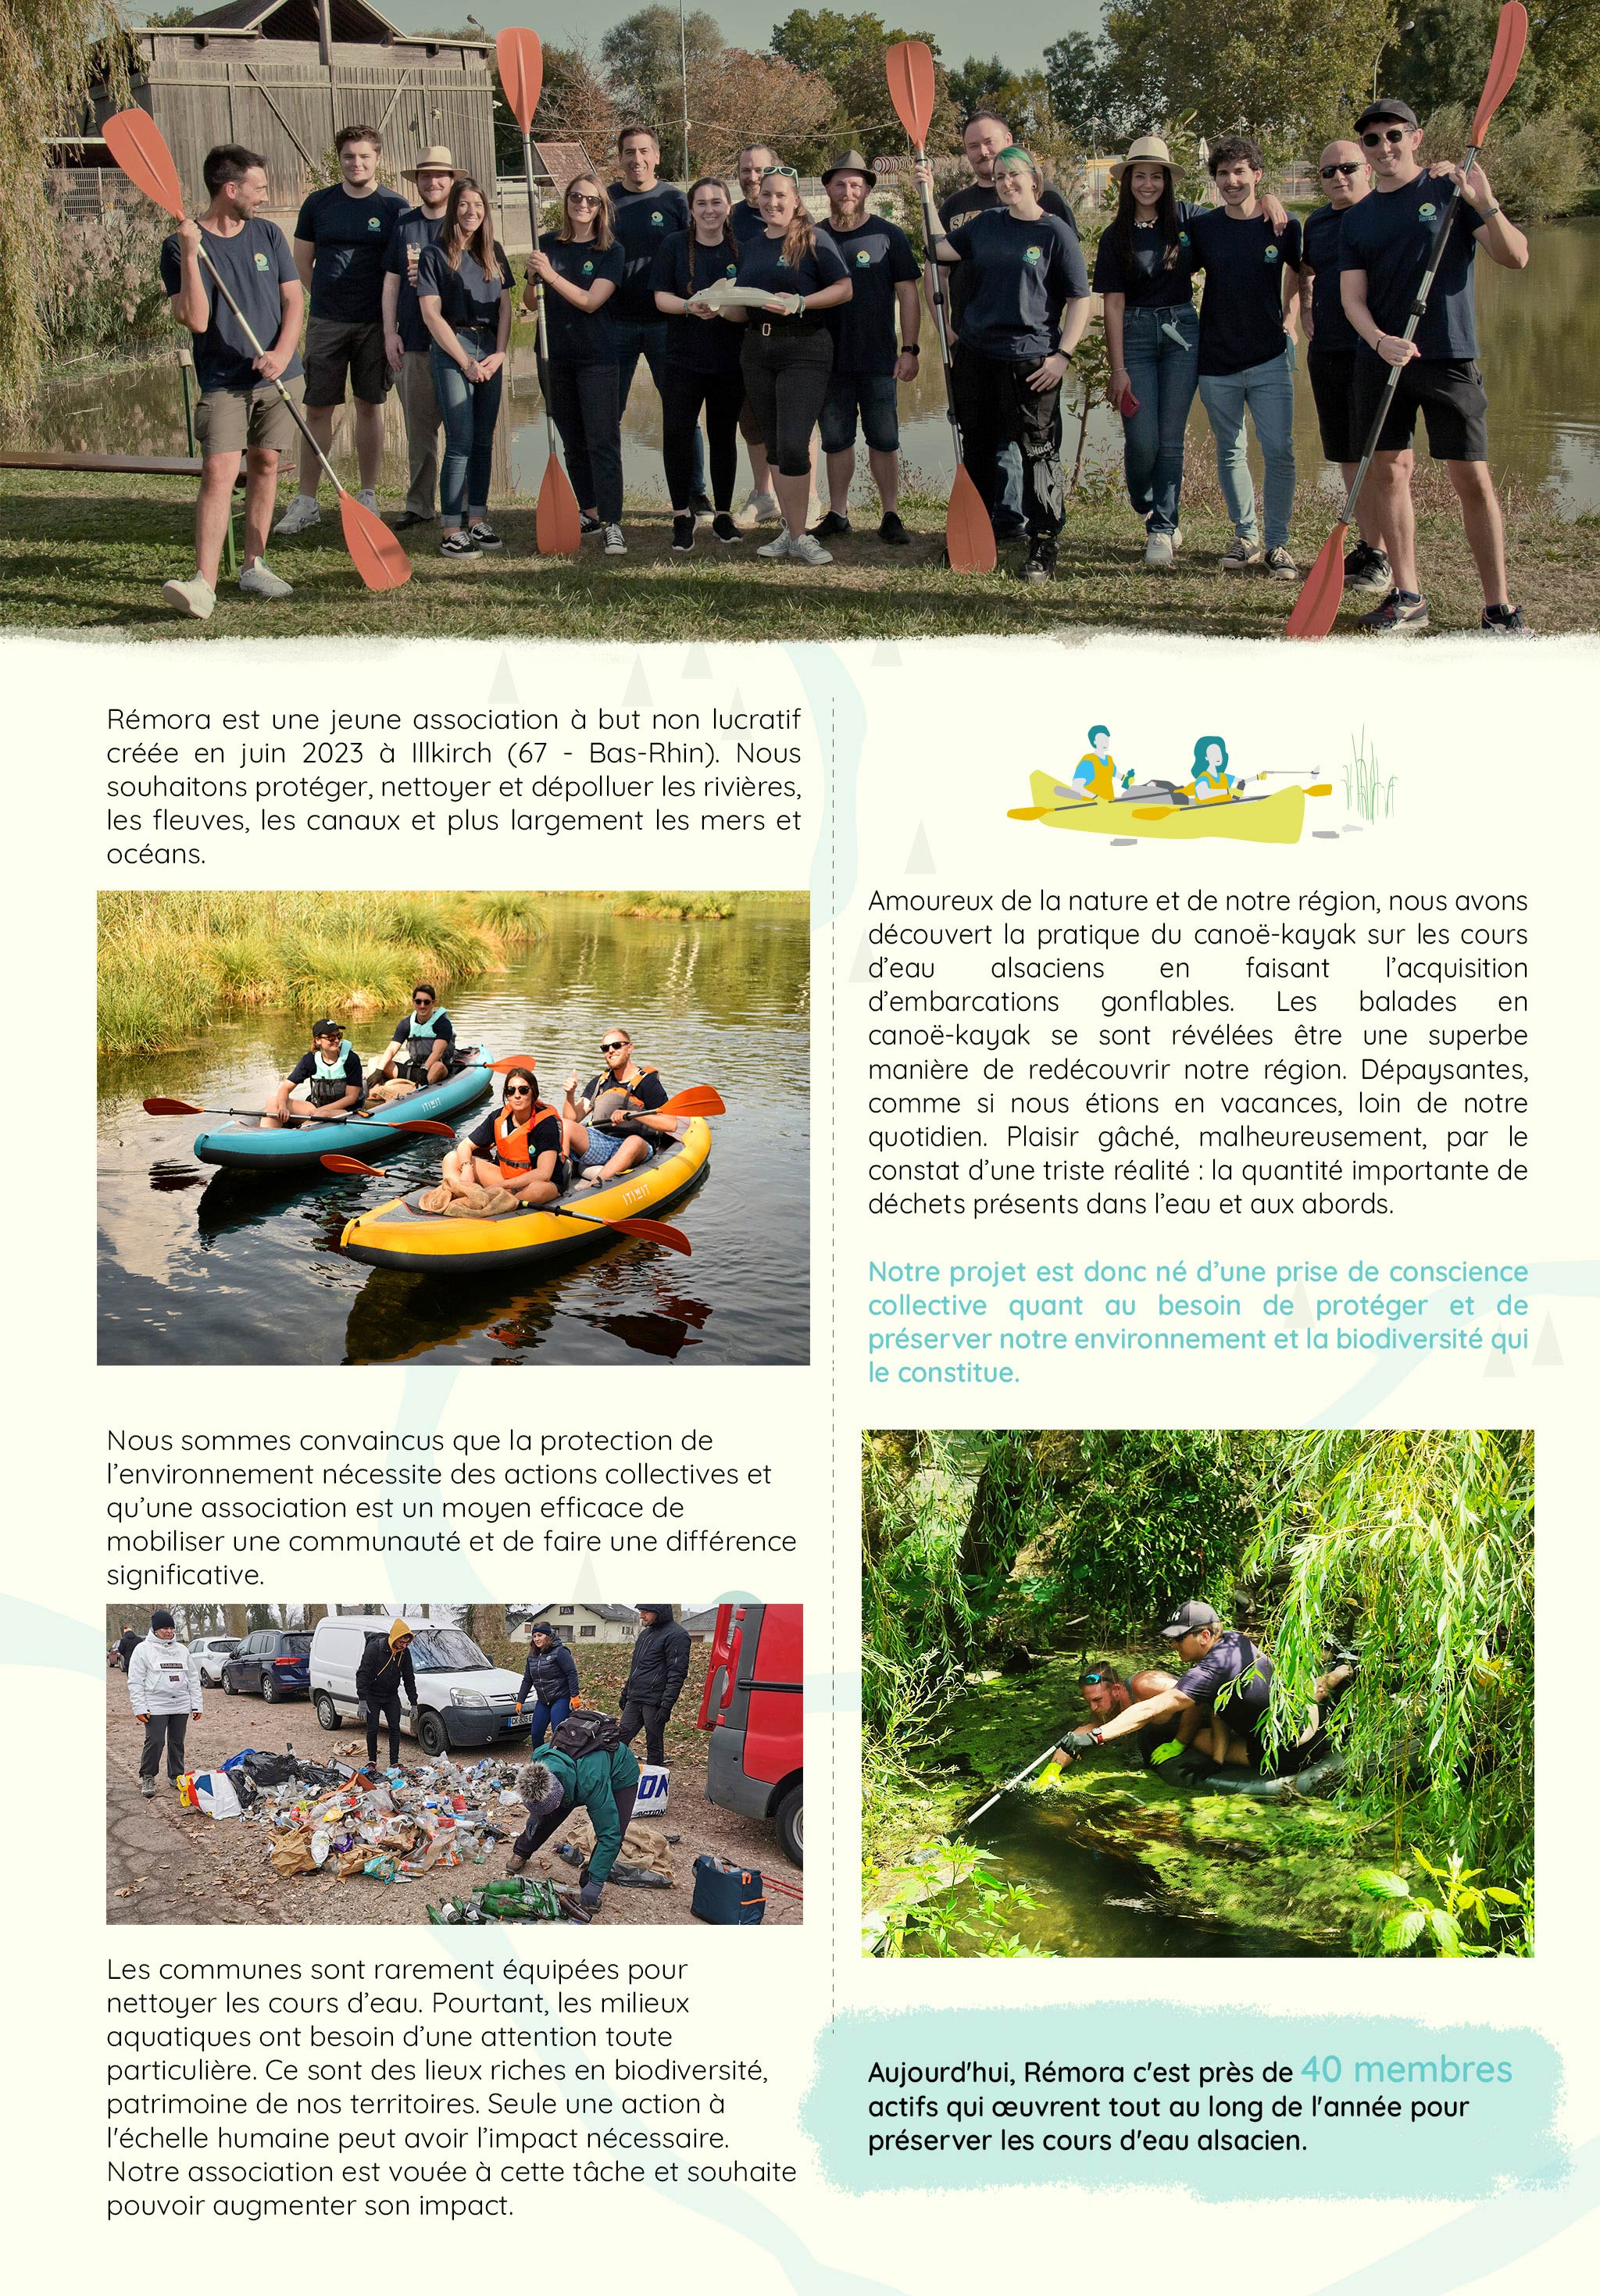   Rémora est une jeune association à but non lucratif créée en juin 2023 à Illkirch (67 - Bas-Rhin). Nous souhaitons protéger, nettoyer et dépolluer les rivières, les fleuves, les canaux et plus largement les mers et océans.  Amoureux de la nature et de notre région, nous avons découvert la pratique du canoë-kayak sur les cours d’eau alsaciens en faisant l’acquisition d’embarcations gonflables. Les balades en canoë-kayak se sont révélées être une superbe manière de redécouvrir notre région. Dépaysantes, comme si nous étions en vacances, loin de notre quotidien. Plaisir gâché, malheureusement, par le constat d’une triste réalité : la quantité importante de déchets présents dans l’eau et aux abords.  Notre projet est donc né d’une prise de conscience collective quant au besoin de protéger et de préserver notre environnement et la biodiversité qui le constitue.  Nous sommes convaincus que la protection de l’environnement nécessite des actions collectives et qu’une association est un moyen efficace de mobiliser une communauté et de faire une différence significative.   Les communes sont rarement équipées pour nettoyer les cours d’eau. Pourtant, les milieux aquatiques ont besoin d’une attention toute particulière. Ce sont des lieux riches en biodiversité, patrimoine de nos territoires. Seule une action à l'échelle humaine peut avoir l’impact nécessaire. Notre association est vouée à cette tâche et souhaite pouvoir augmenter son impact.   Aujourd'hui, Rémora c'est près de quarante membres actifs qui œuvrent tout au long de l'année pour préserver les cours d'eau alsacien.  